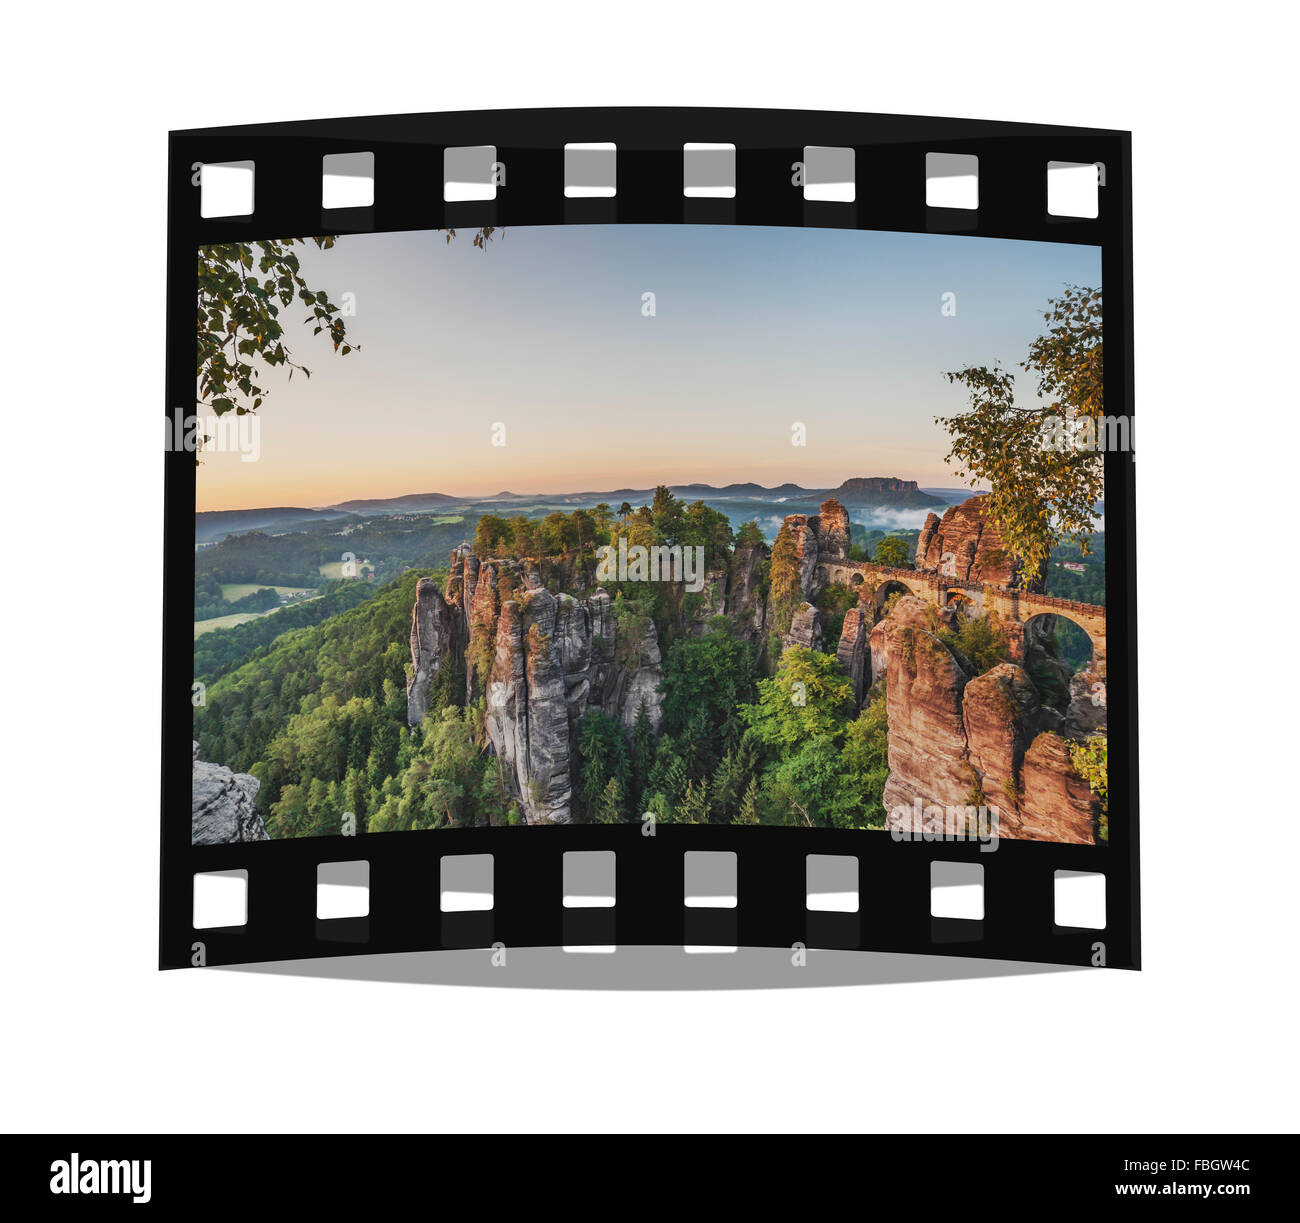 Formazione di roccia Bastei (Bastion) e Table Mountain Lilienstein, Lohmen, Svizzera Sassone vicino a Dresda, Sassonia, Germania, Europa Foto Stock